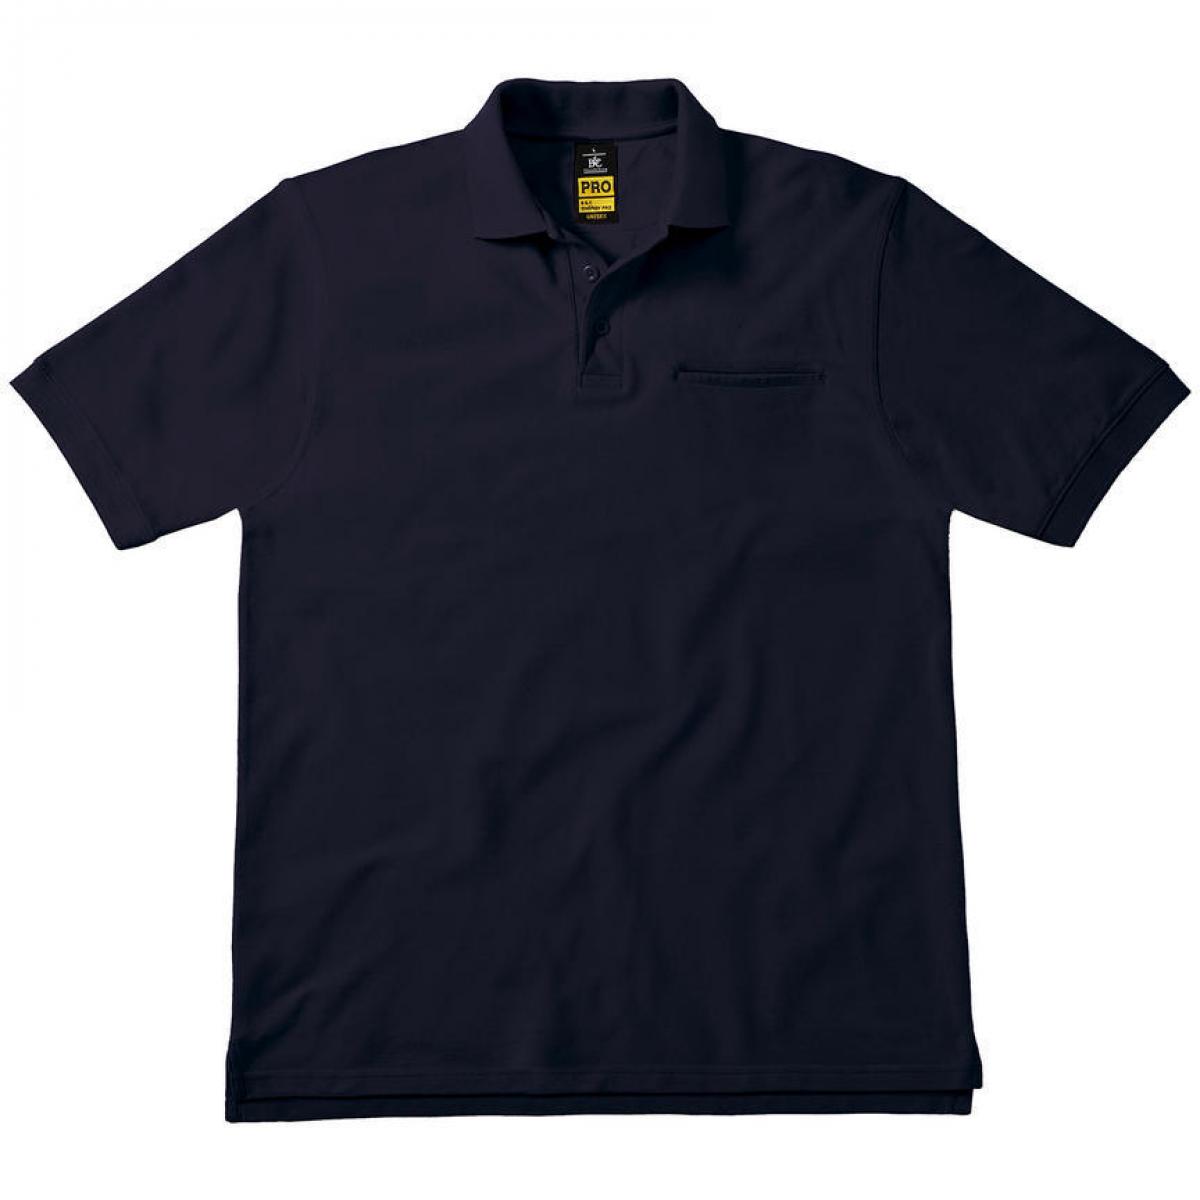 Hersteller: B&C Pro Collection Herstellernummer: PUC11 Artikelbezeichnung: Energy Pro Workwear Pocket Poloshirt für Herren Farbe: Navy